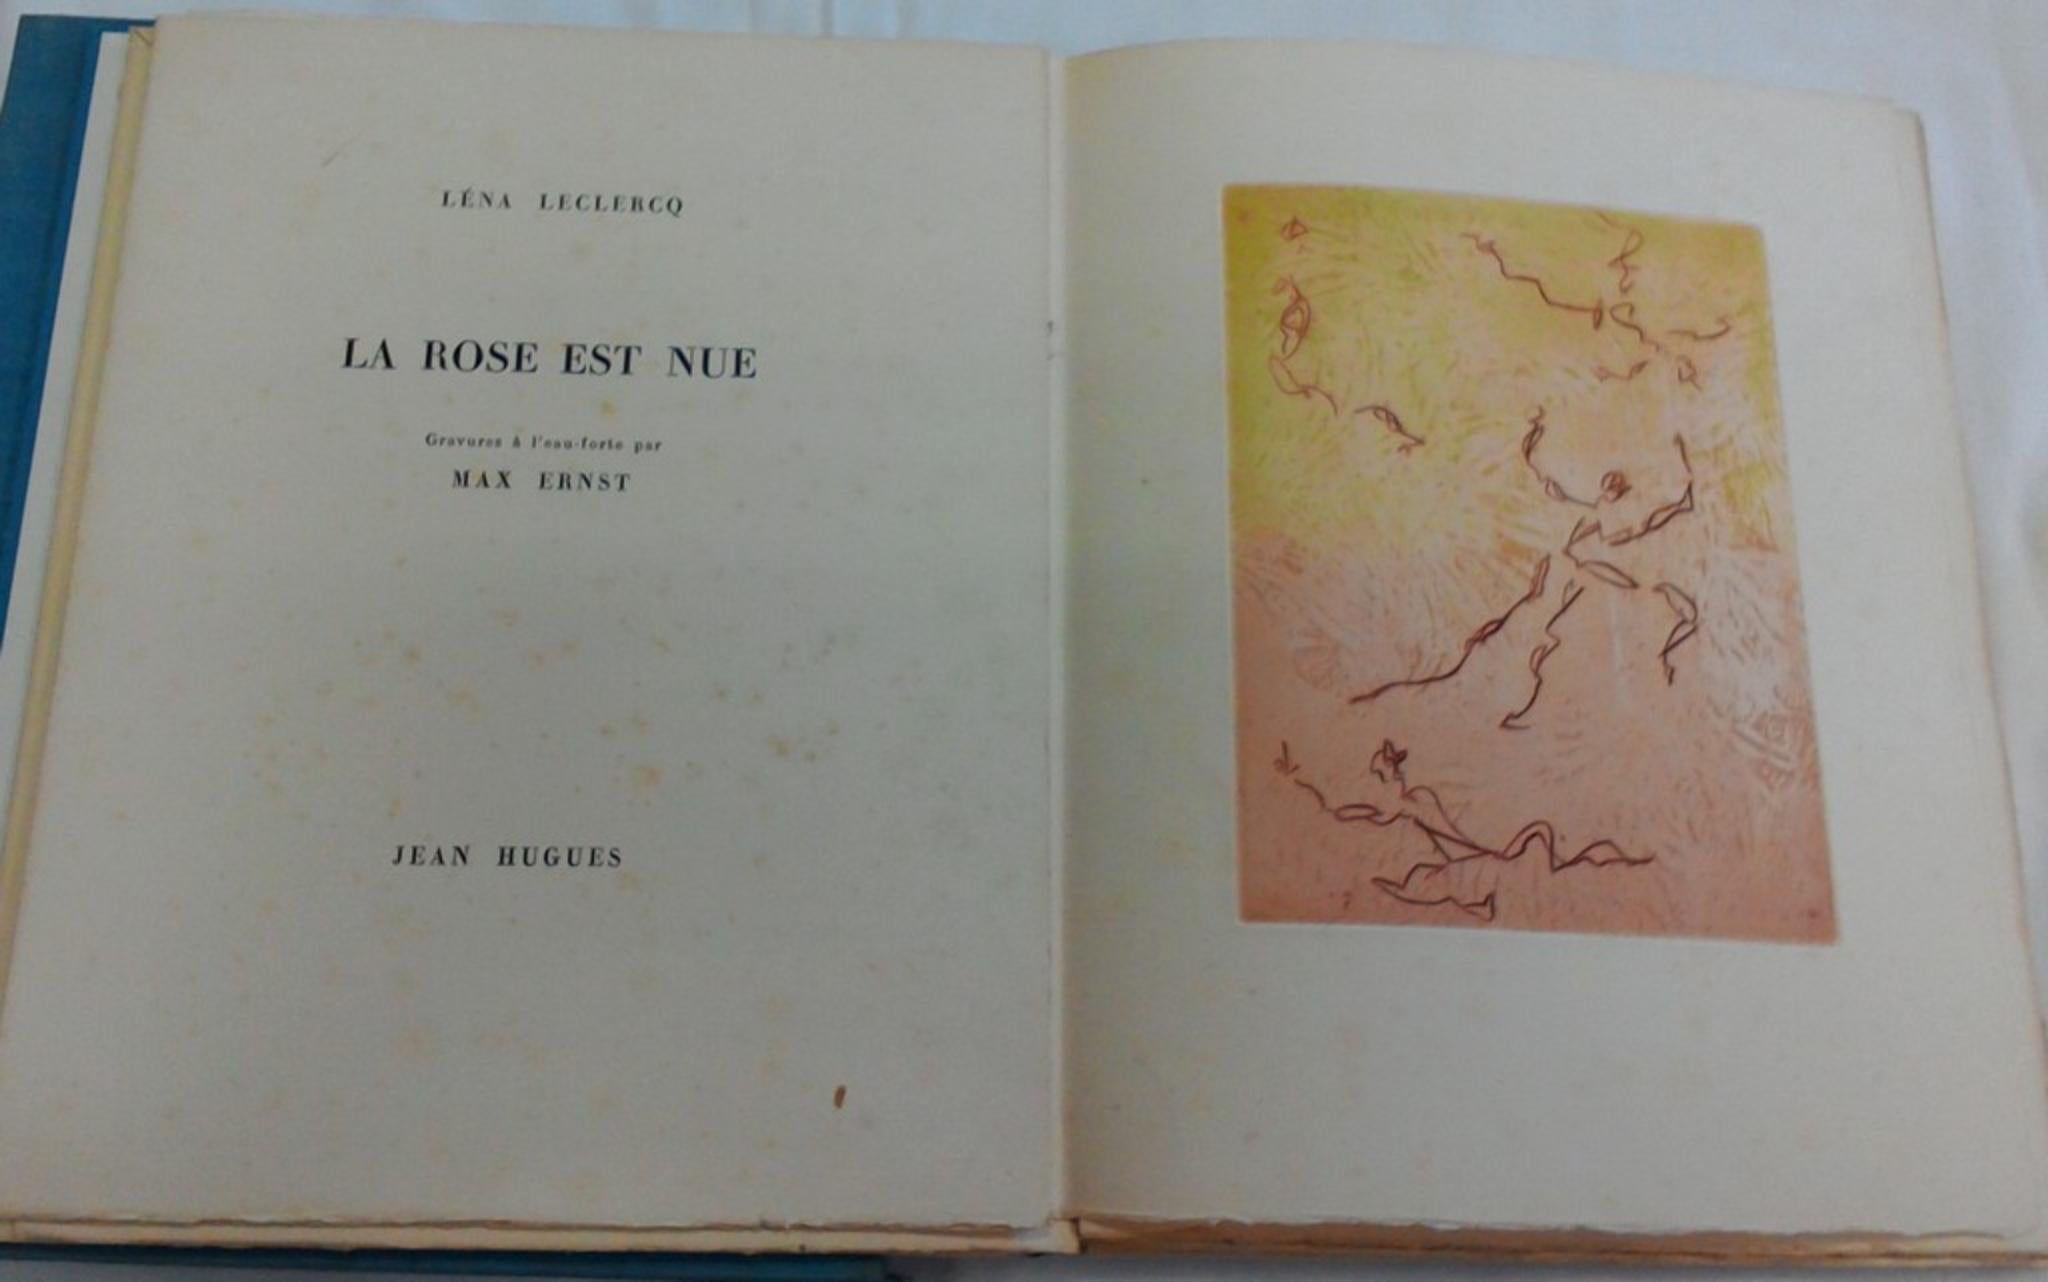 Le Rose est Nue – Seltenes Buch, illustriert von Max Ernst  - 1960